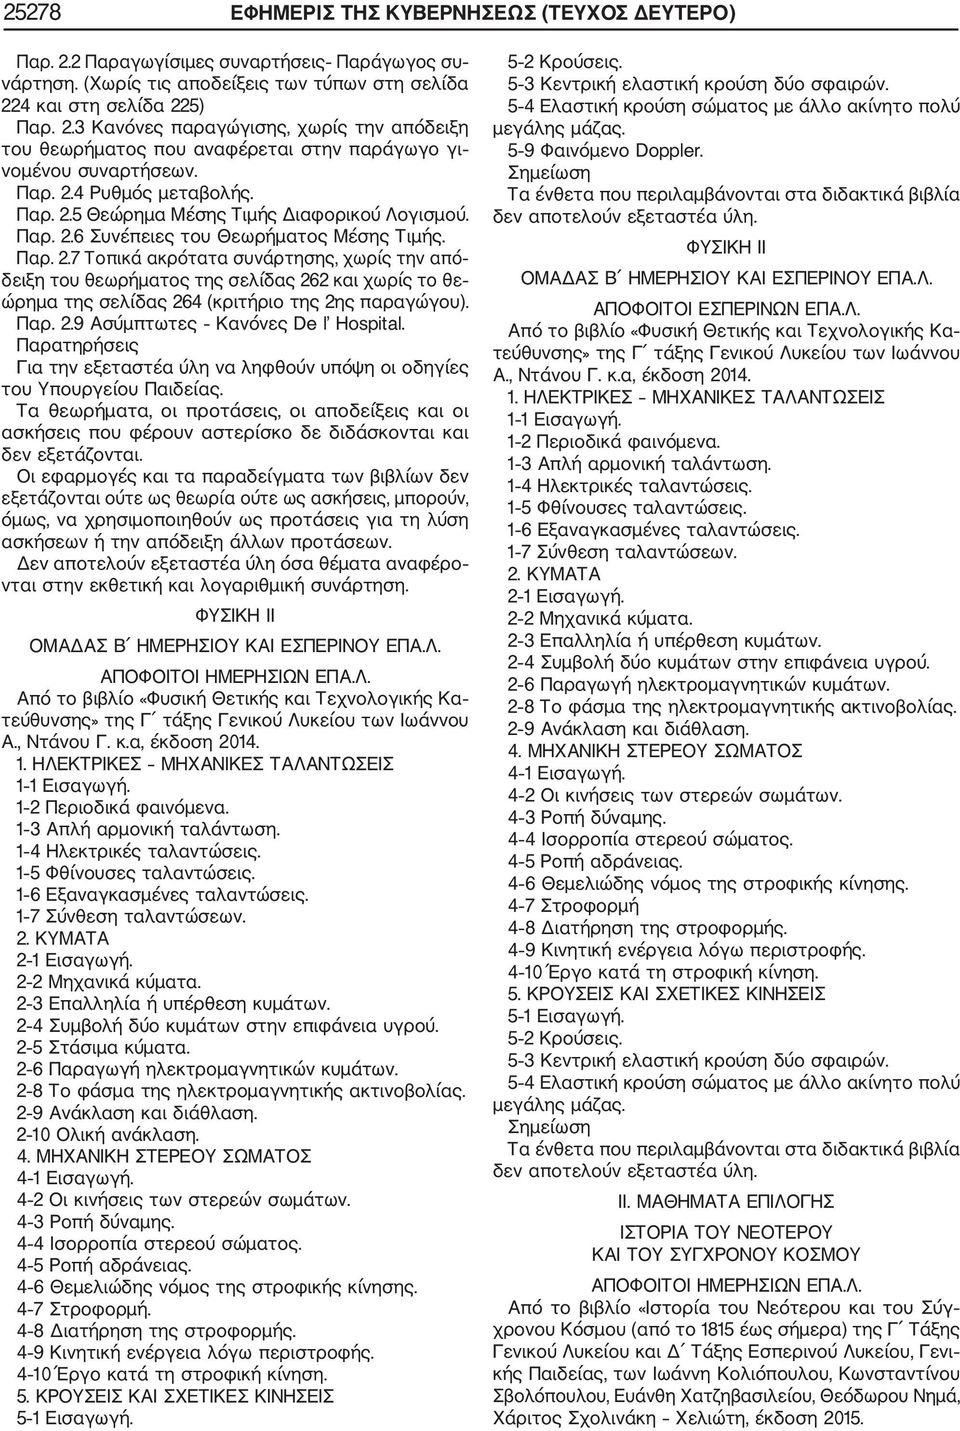 Παρ. 2.9 Ασύμπτωτες Κανόνες De l Hospital. Παρατηρήσεις Για την εξεταστέα ύλη να ληφθούν υπόψη οι οδηγίες του Υπουργείου Παιδείας.